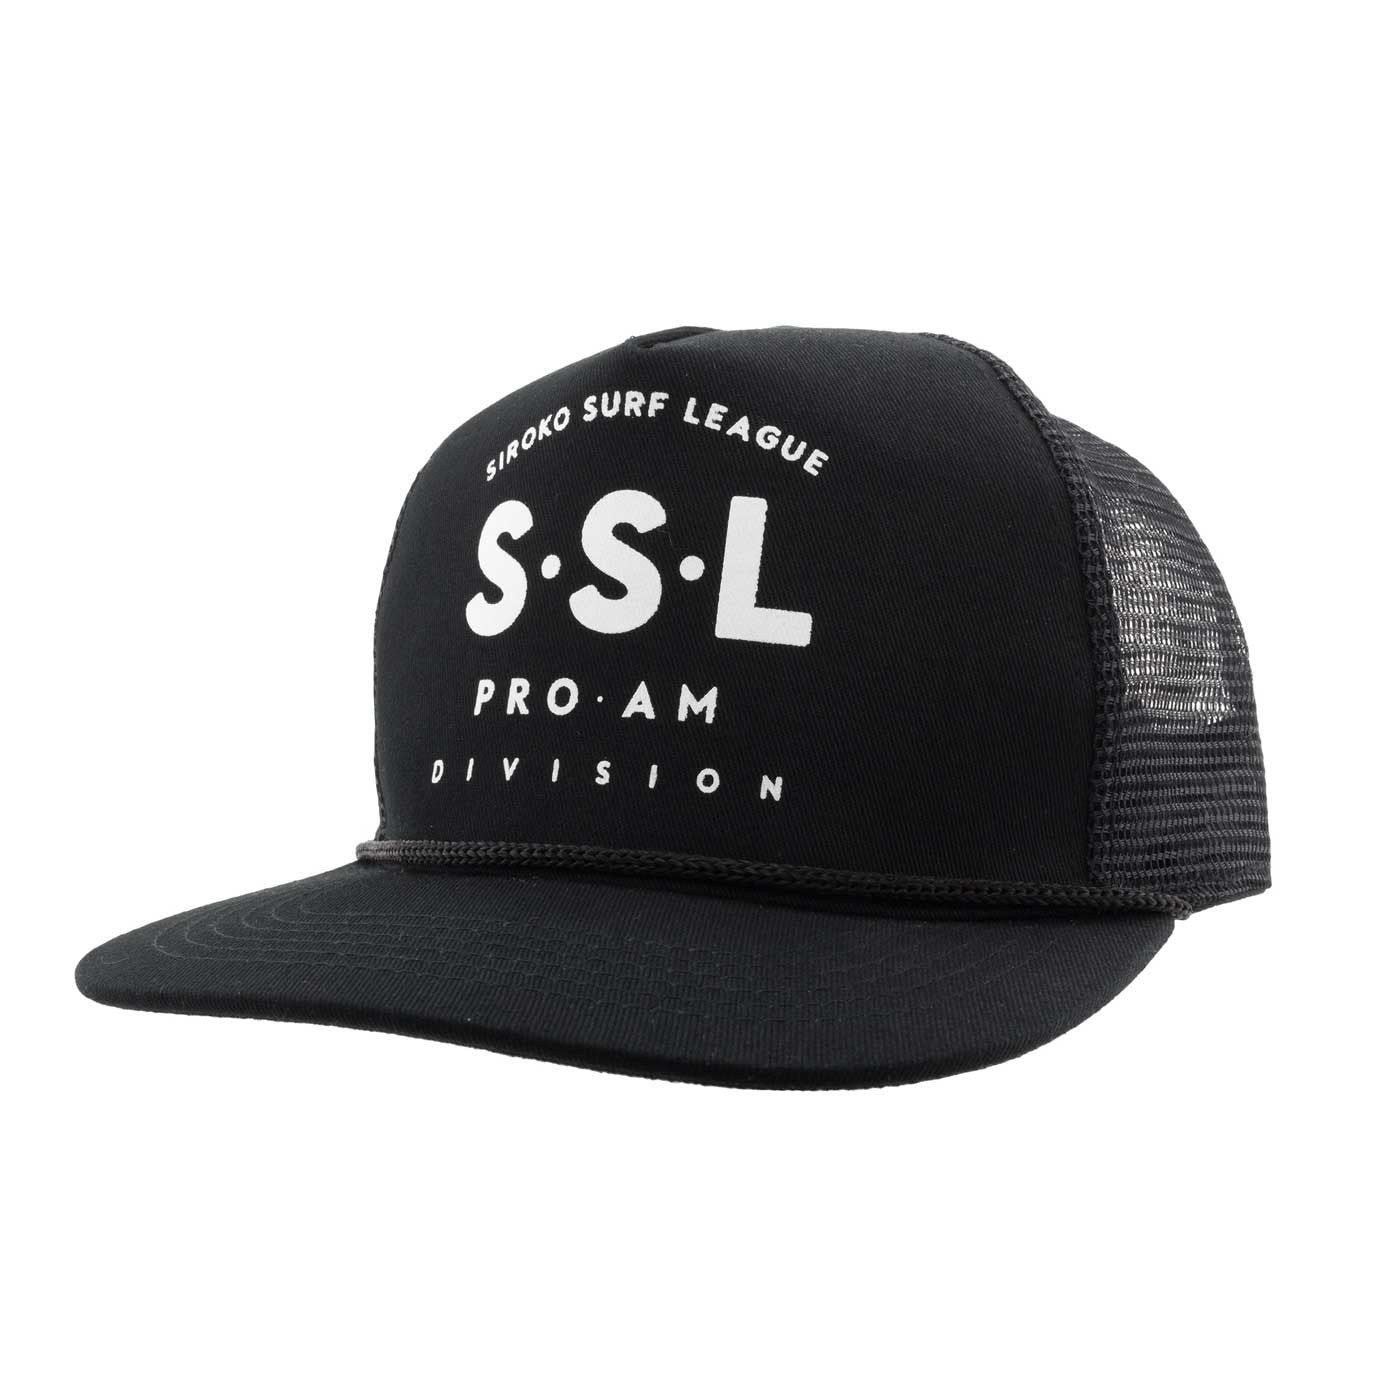 Official trucker-style cap SSL